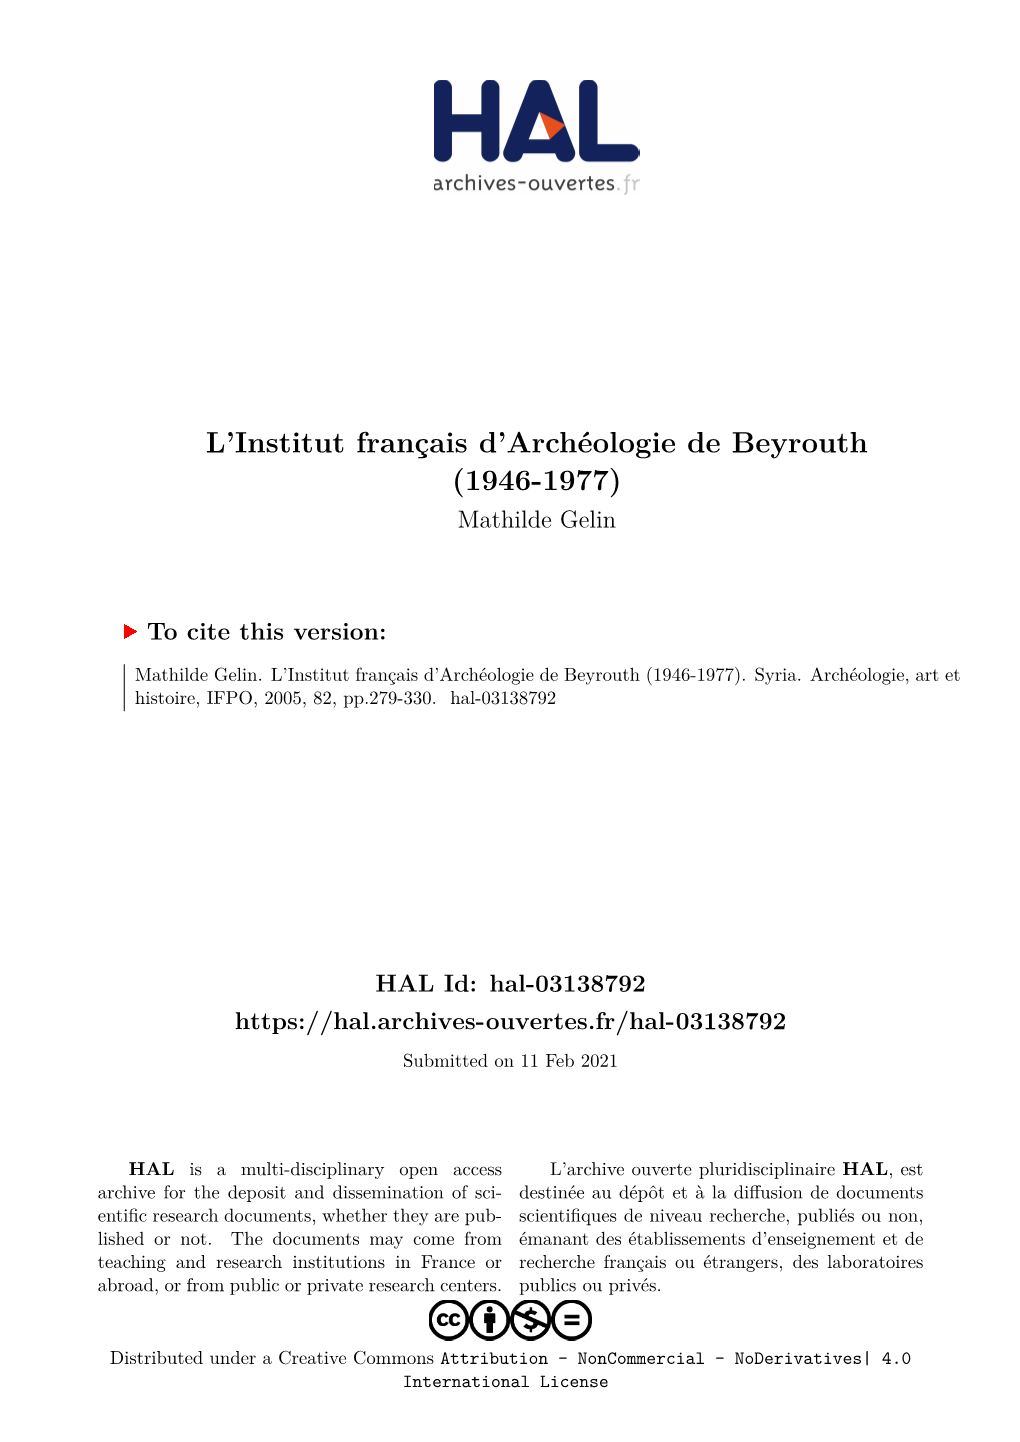 L'institut Français D'archéologie De Beyrouth